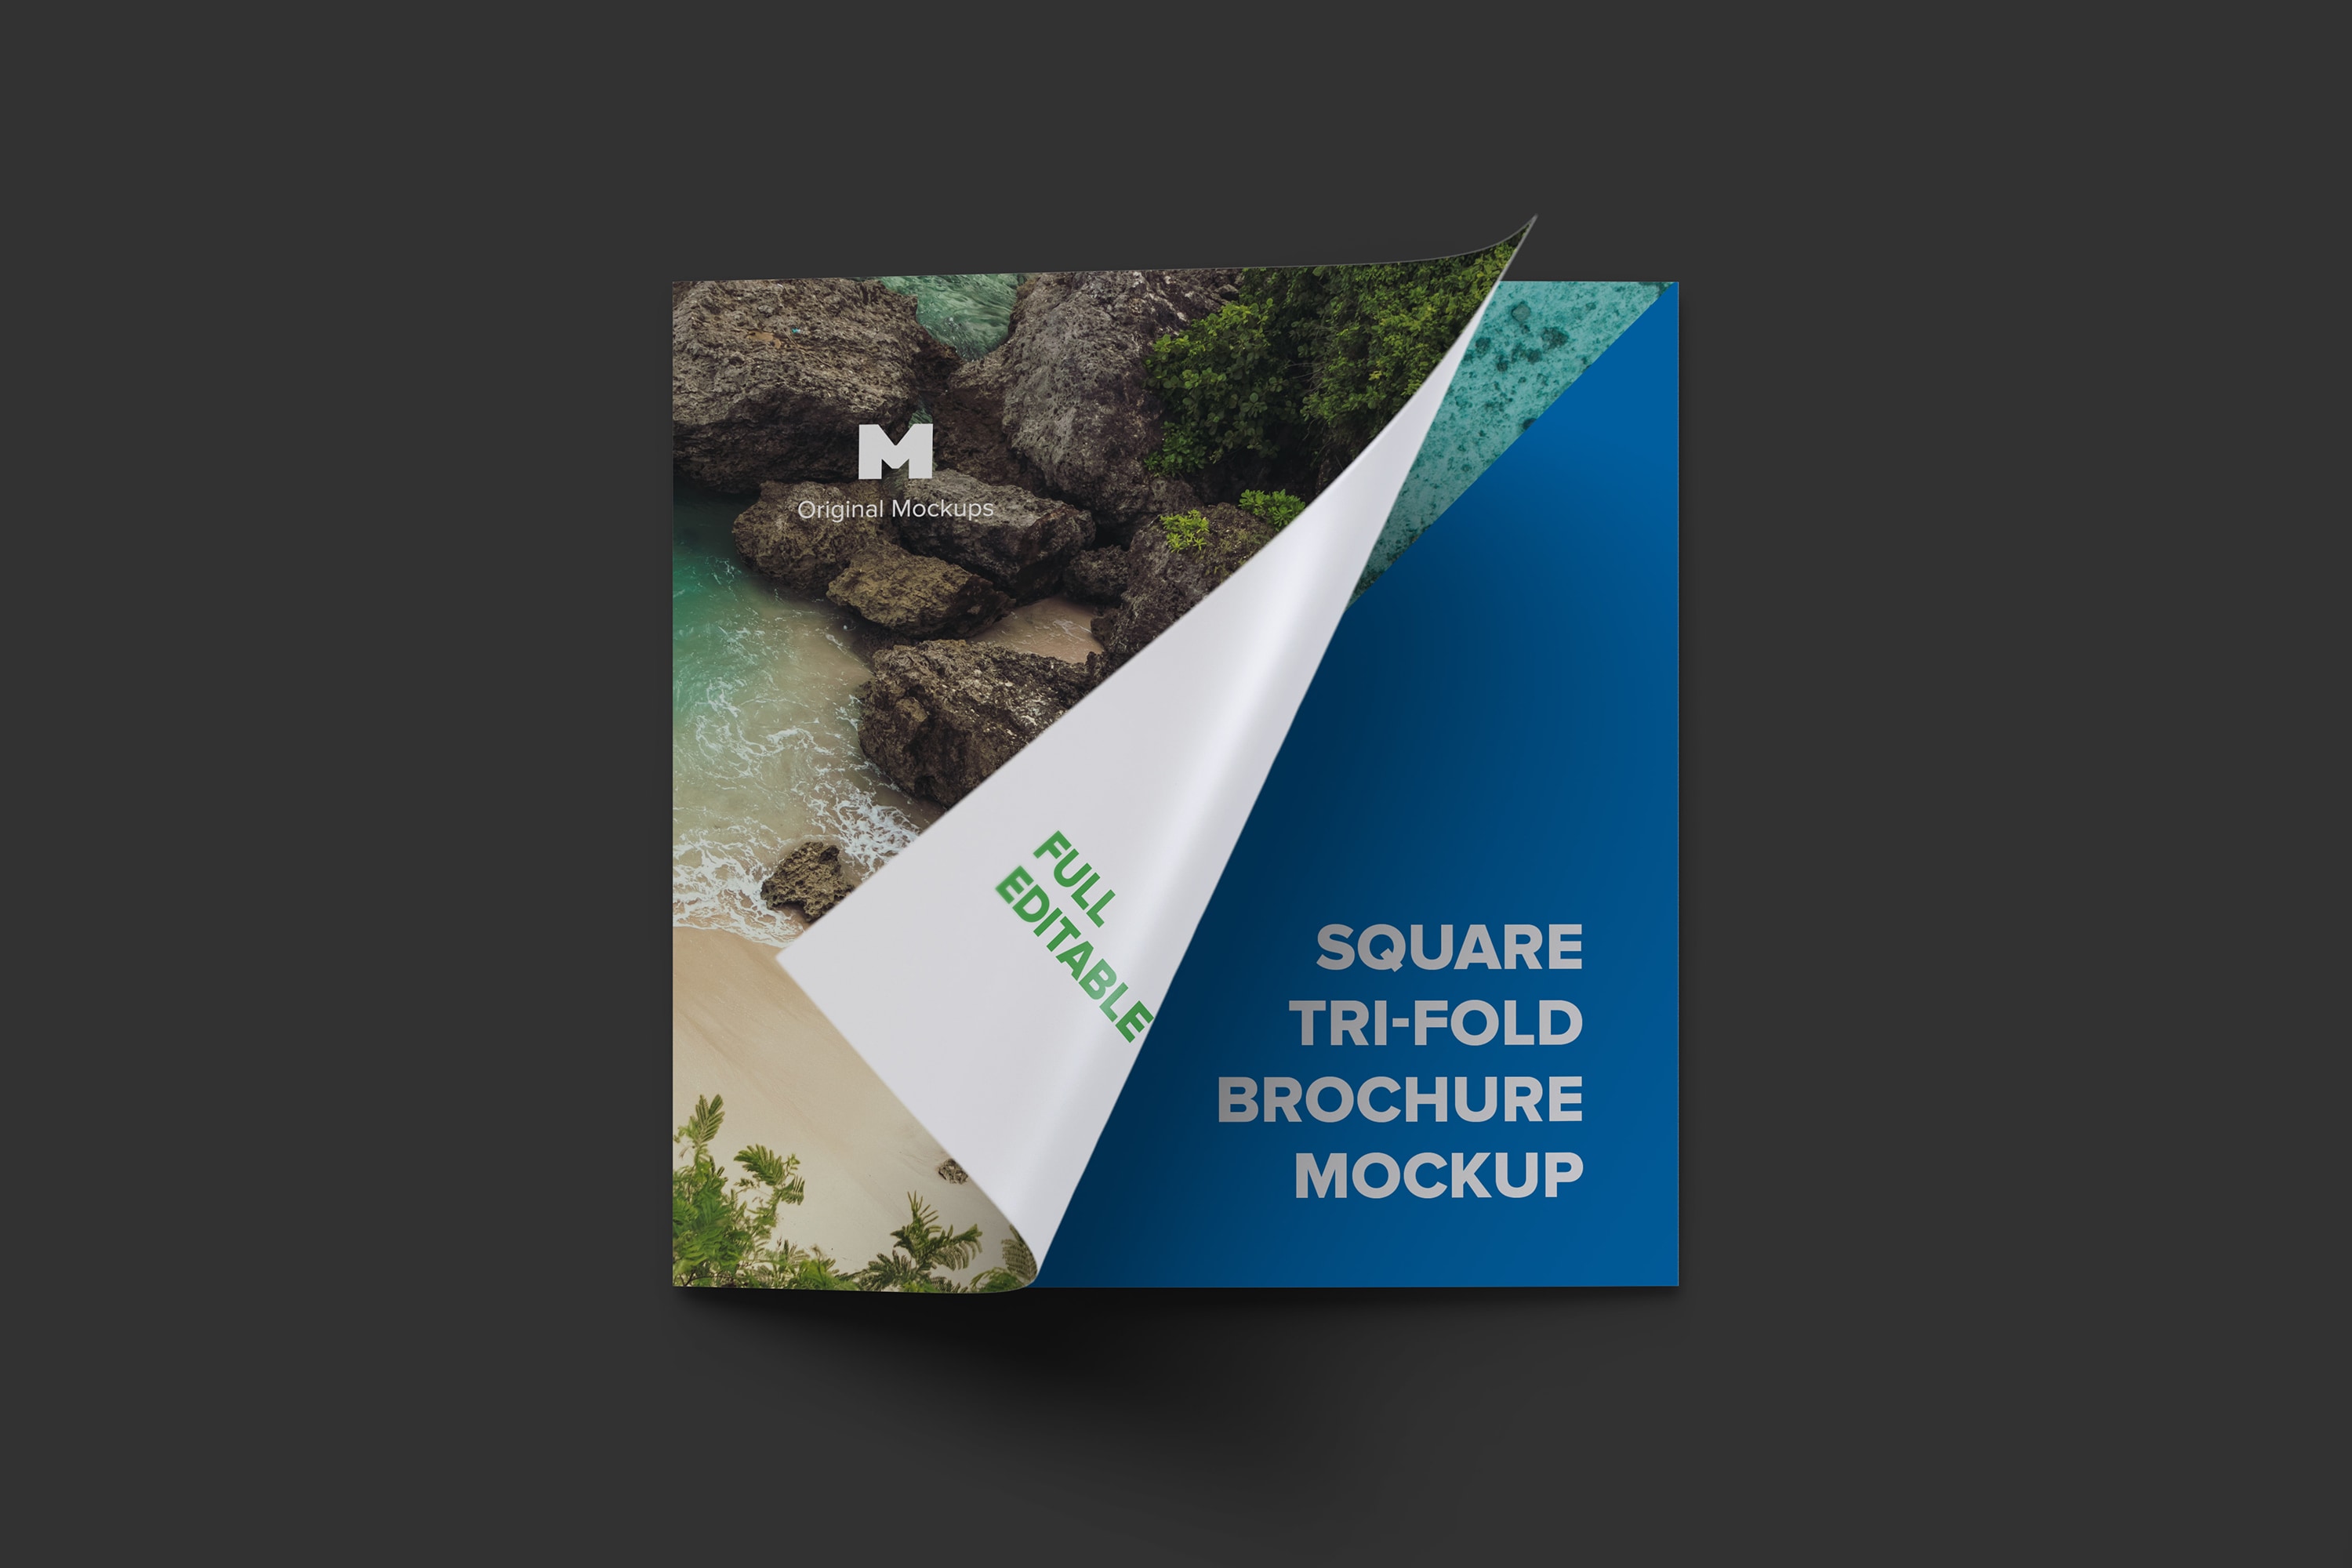 方形三折页宣传传单设计图样机03 Square Tri-Fold Brochure Mockup 03插图(1)